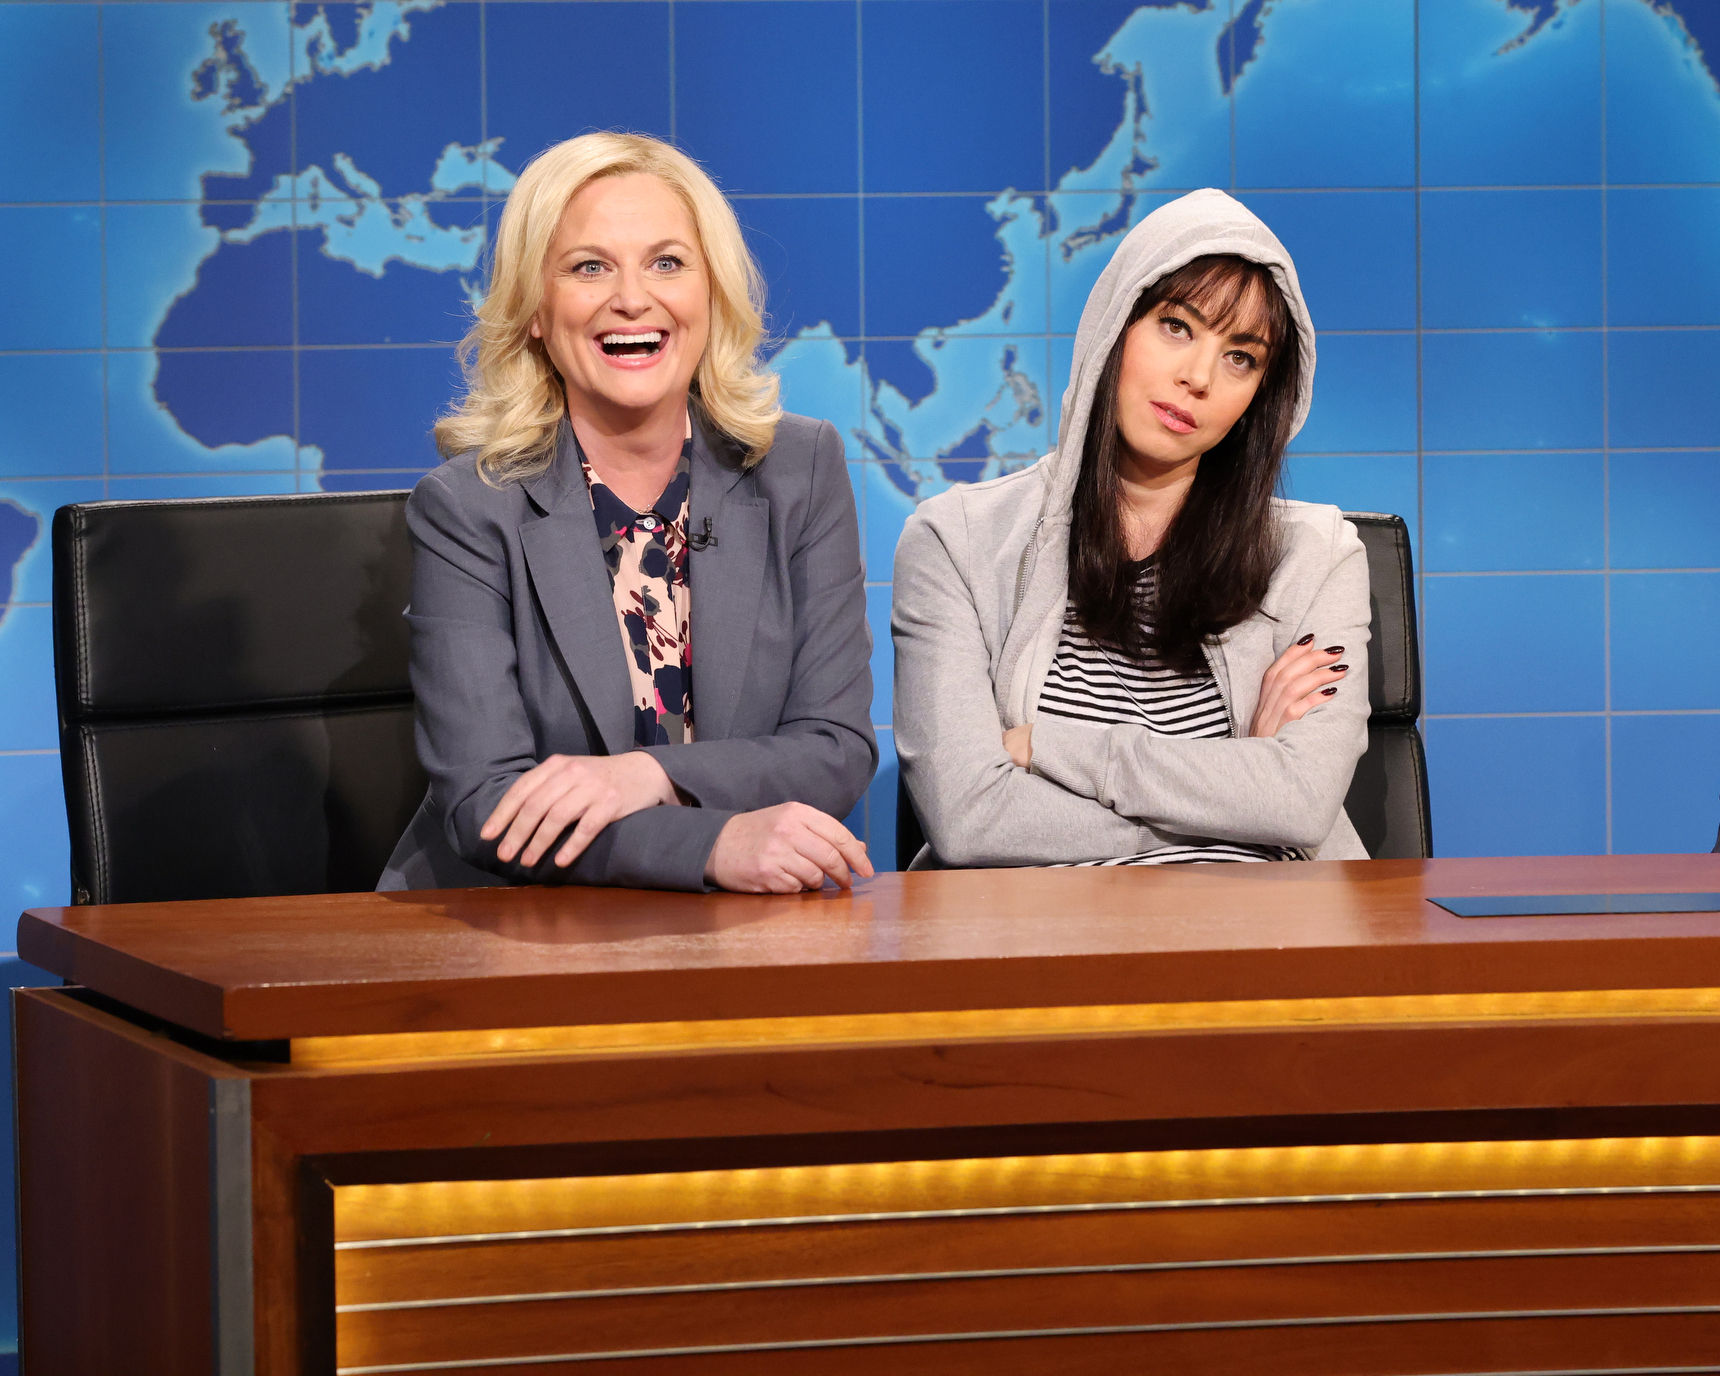 SNL': Amy Poehler, Aubrey Plaza Reprise 'Parks & Rec' Roles